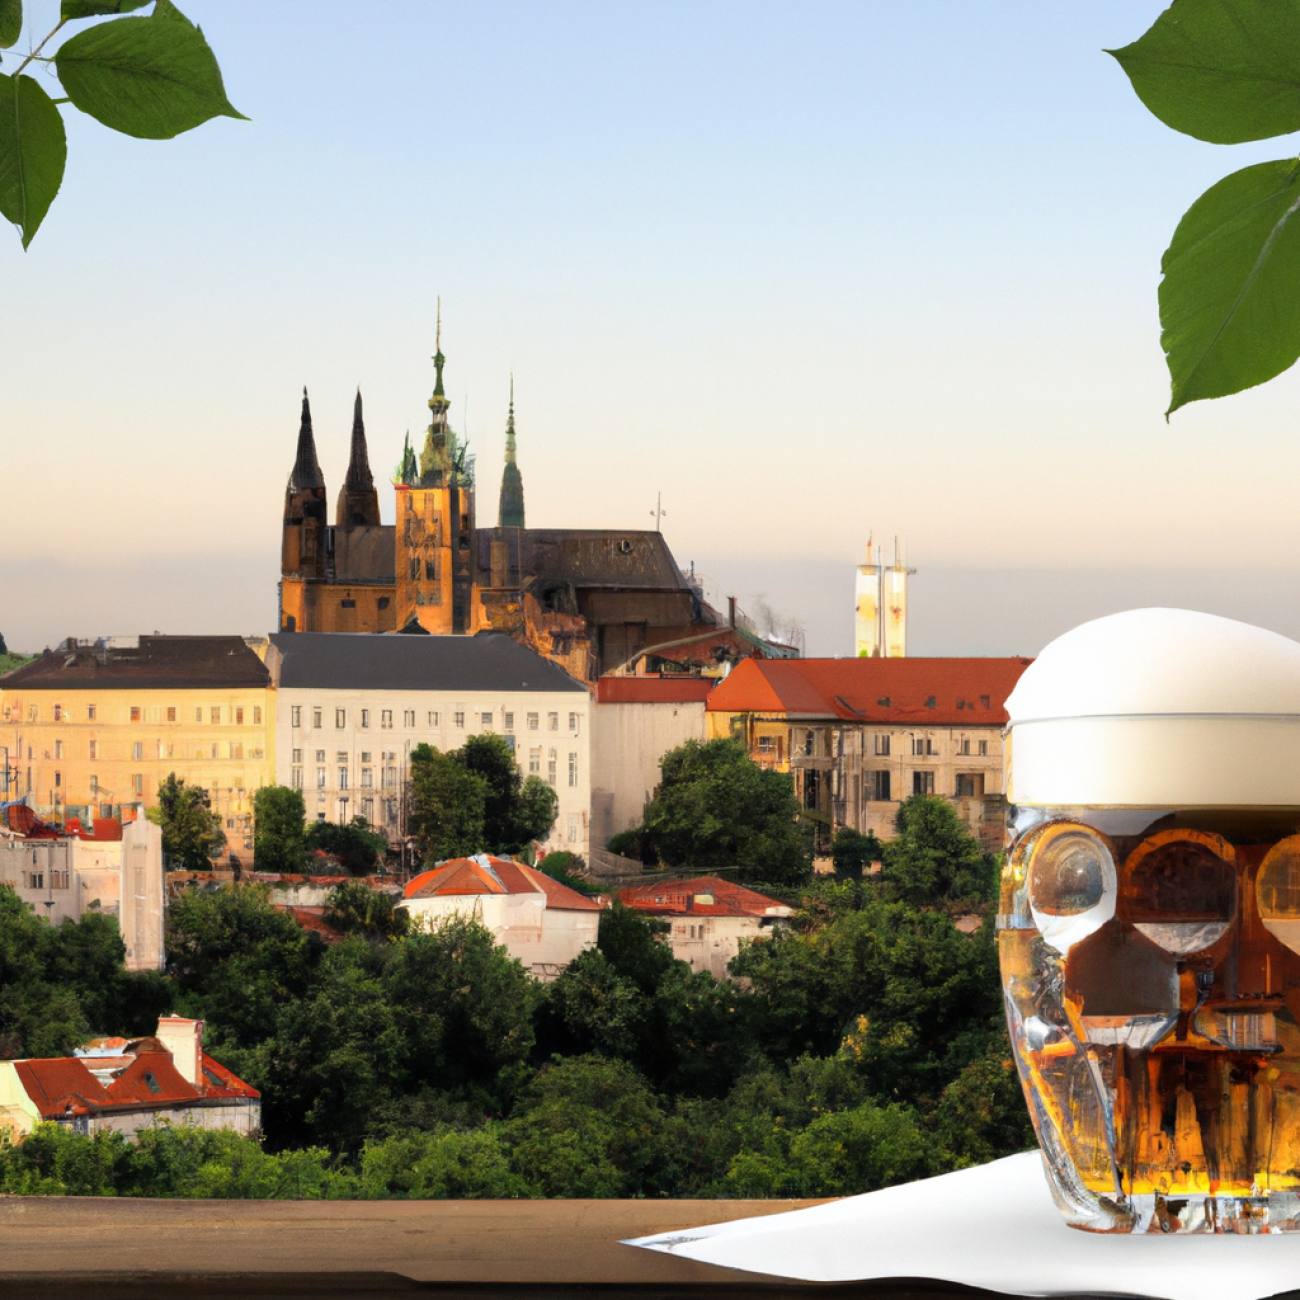 6. Klášterní pivovar Strahov: Pivo s bohatou historií a úchvatným výhledem na Prahu